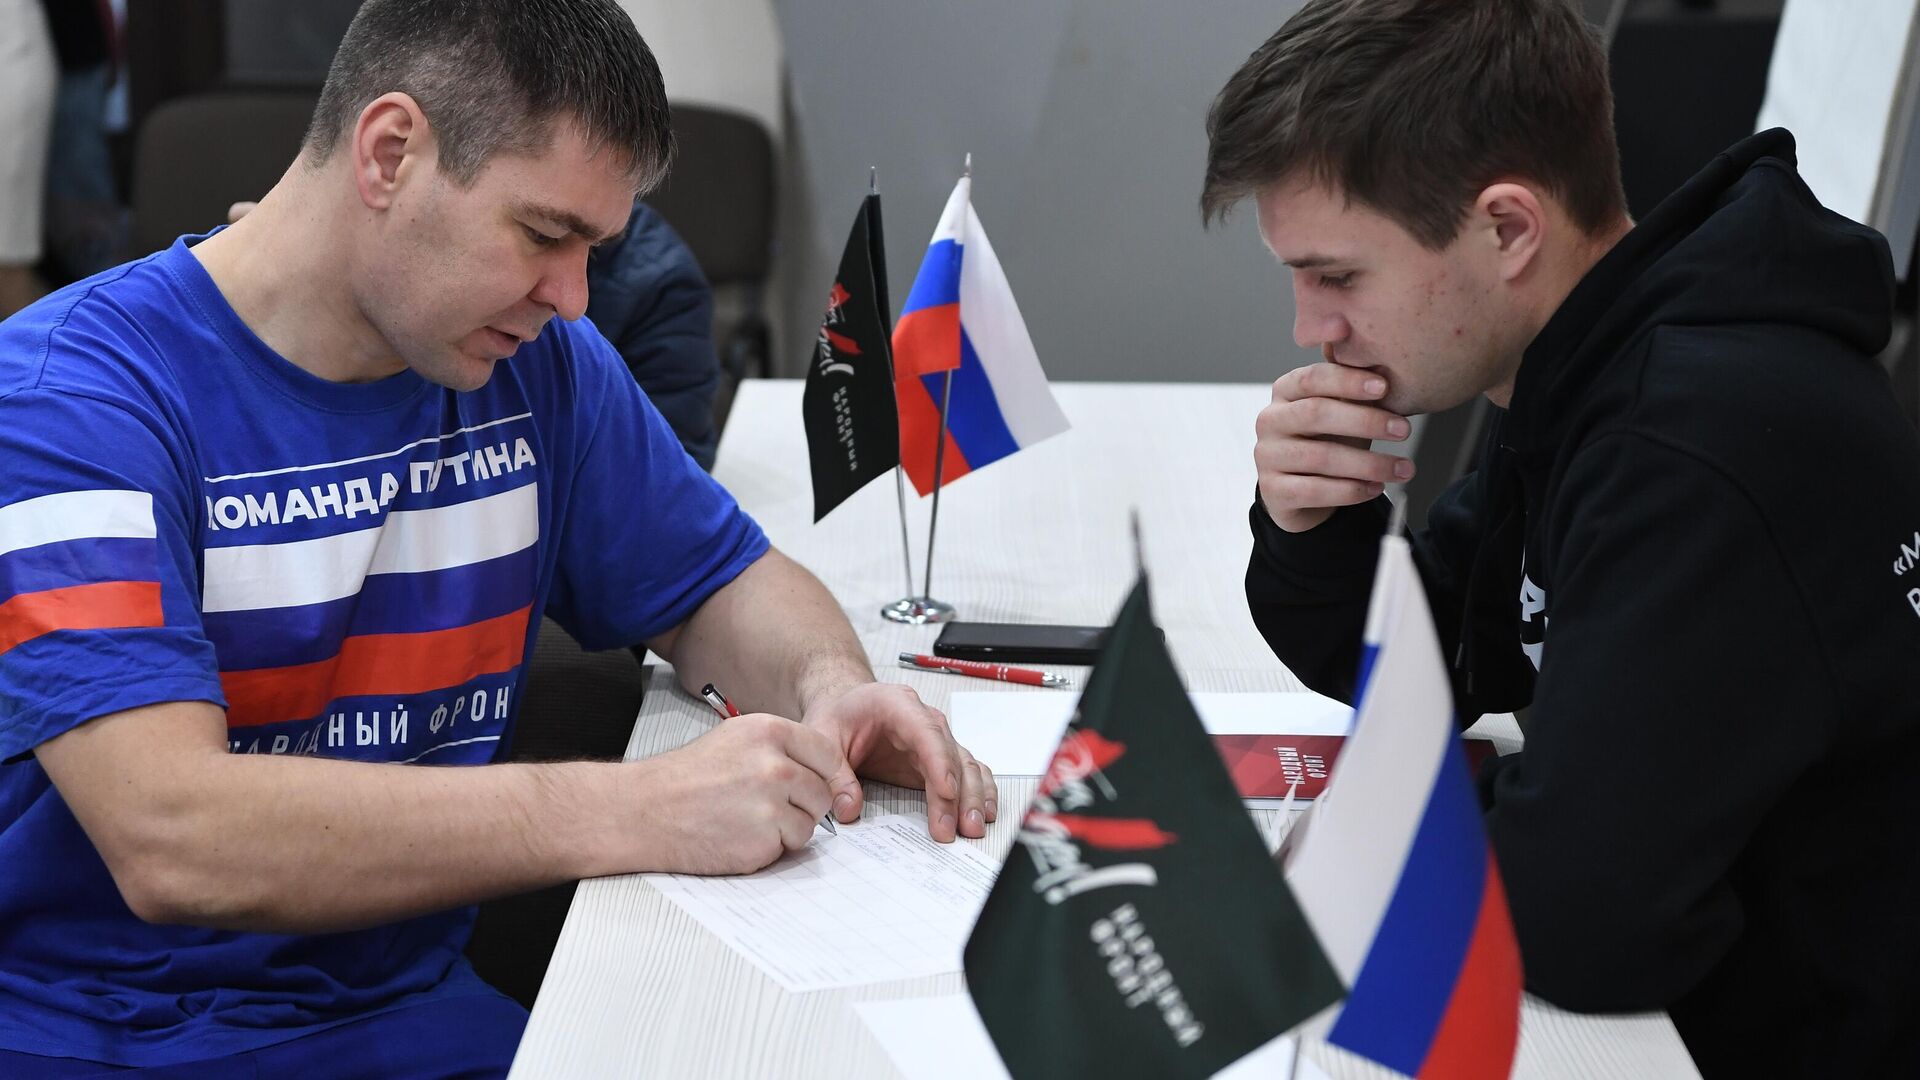 Народный фронт: сбор подписей за Путина в новых регионах идет в выездном формате